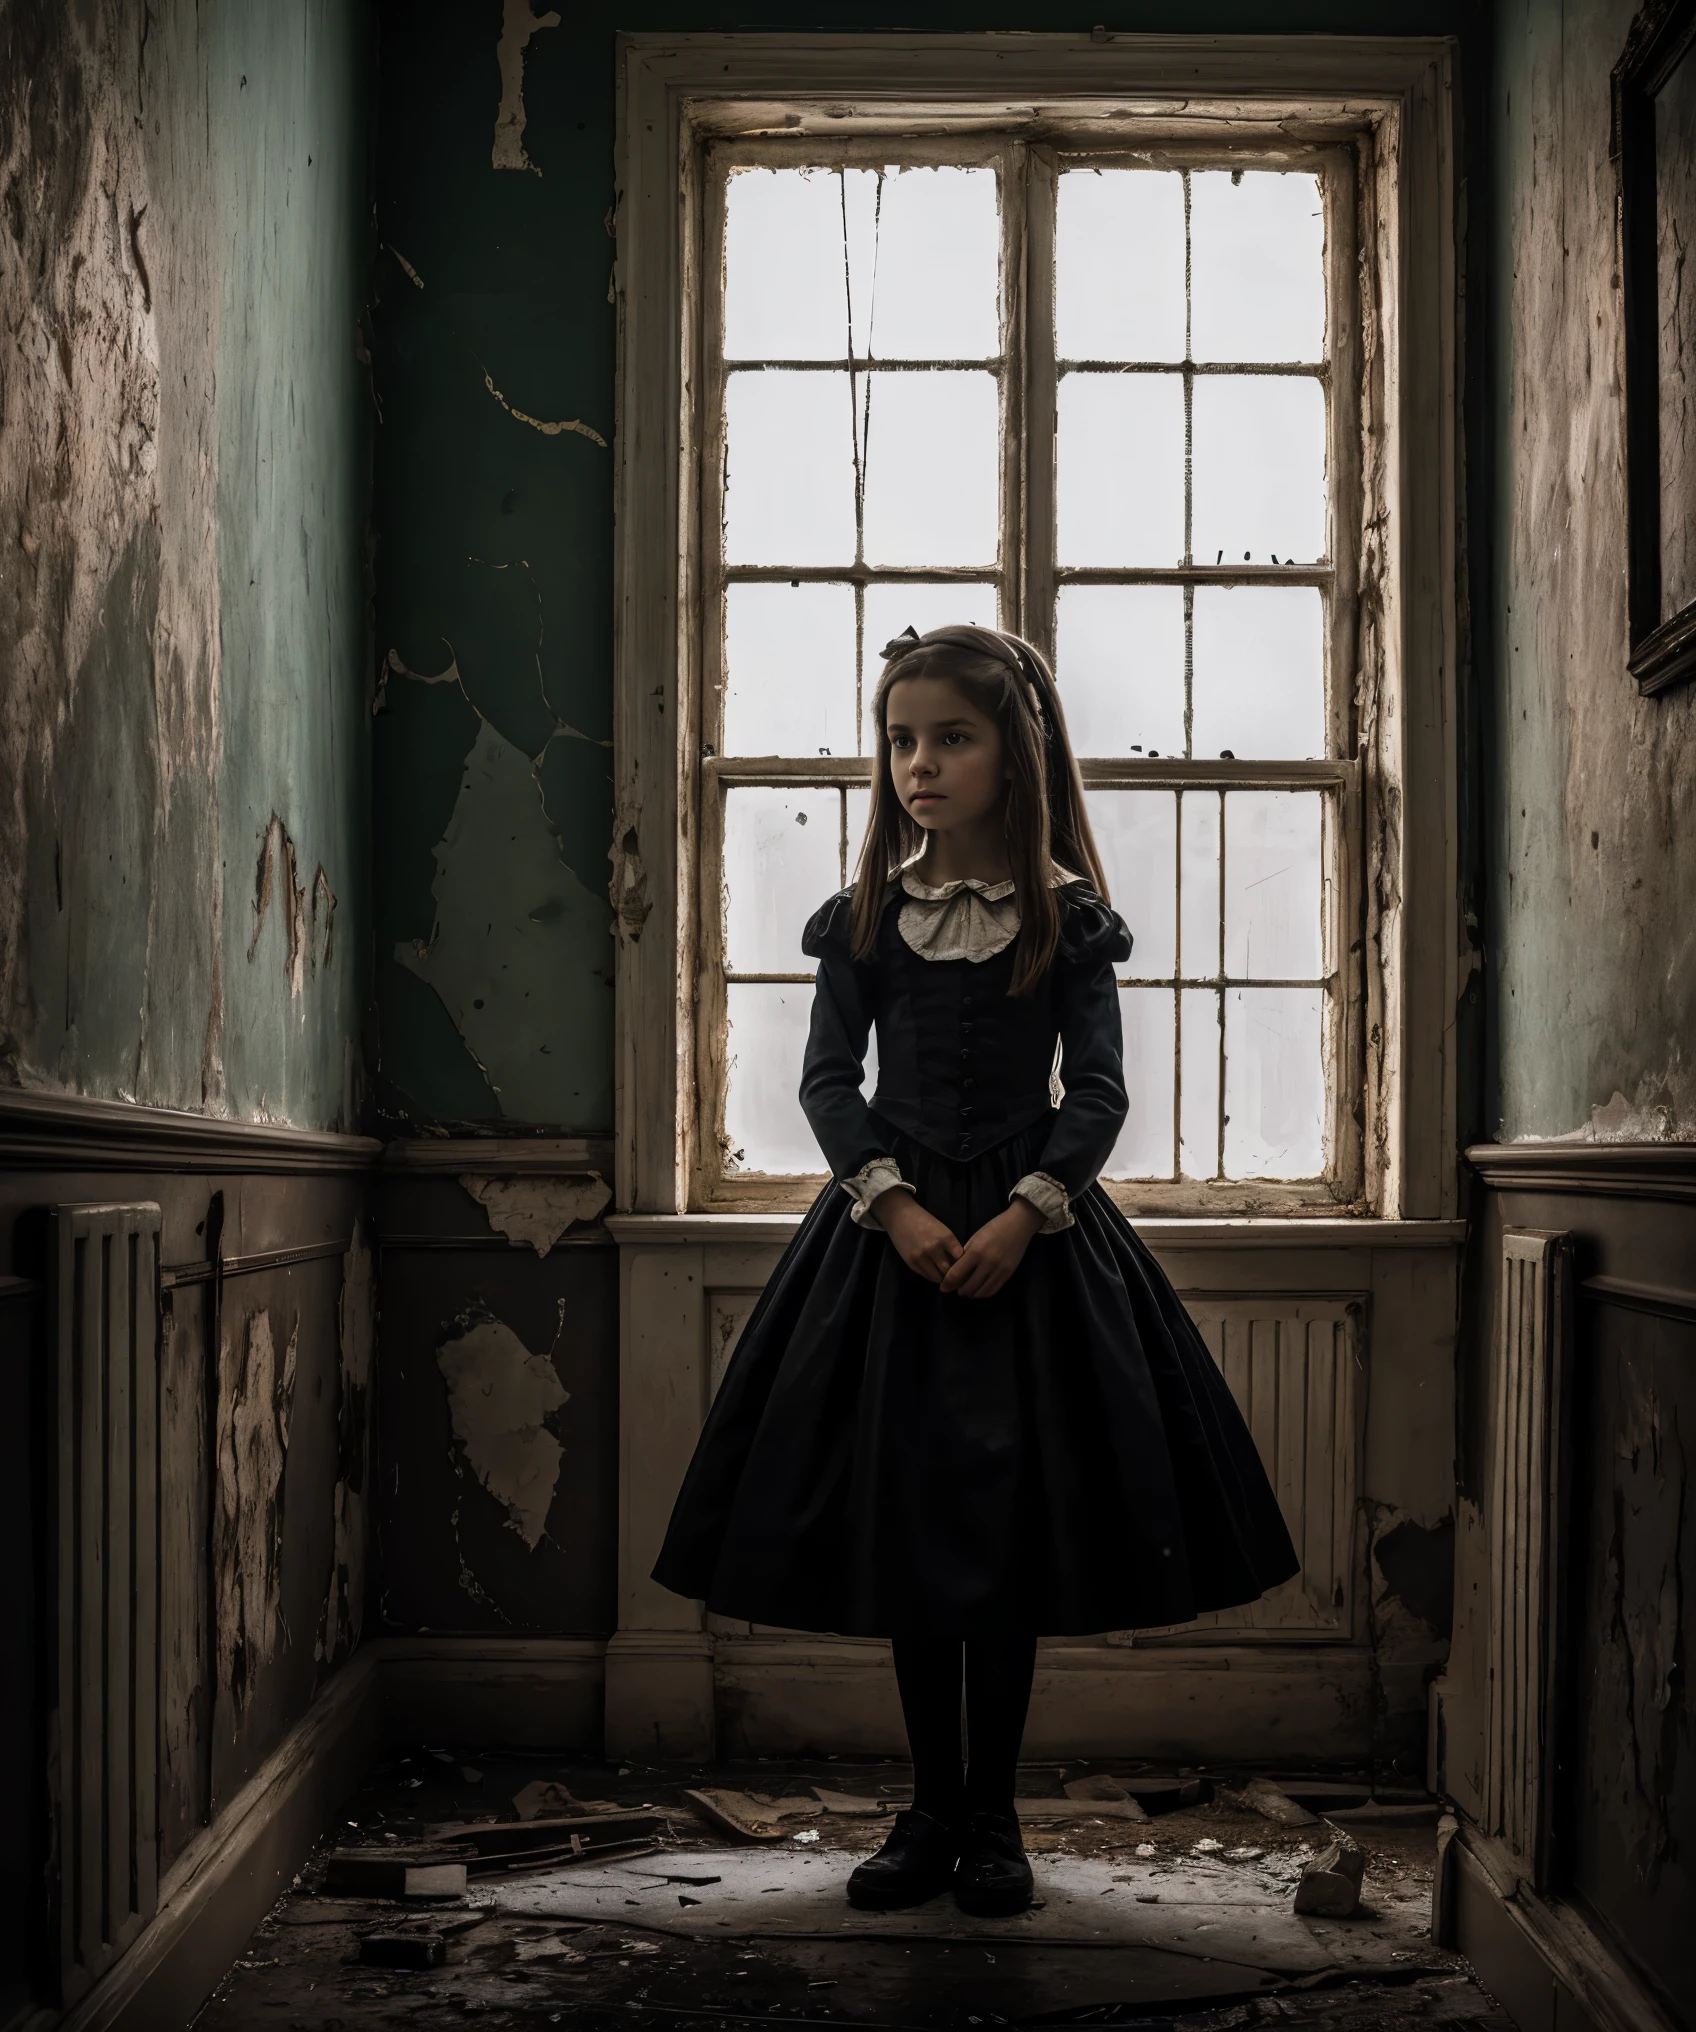 altamente detalhado, fotografia fotorrealista de uma jovem em um asilo, Alice de "Alice no País das Maravilhas", atmosfera escura e misteriosa, detalhes intrincados, como paredes rachadas e pintura descascada, inspirado nas obras de Lewis Carroll e Tim Burton.